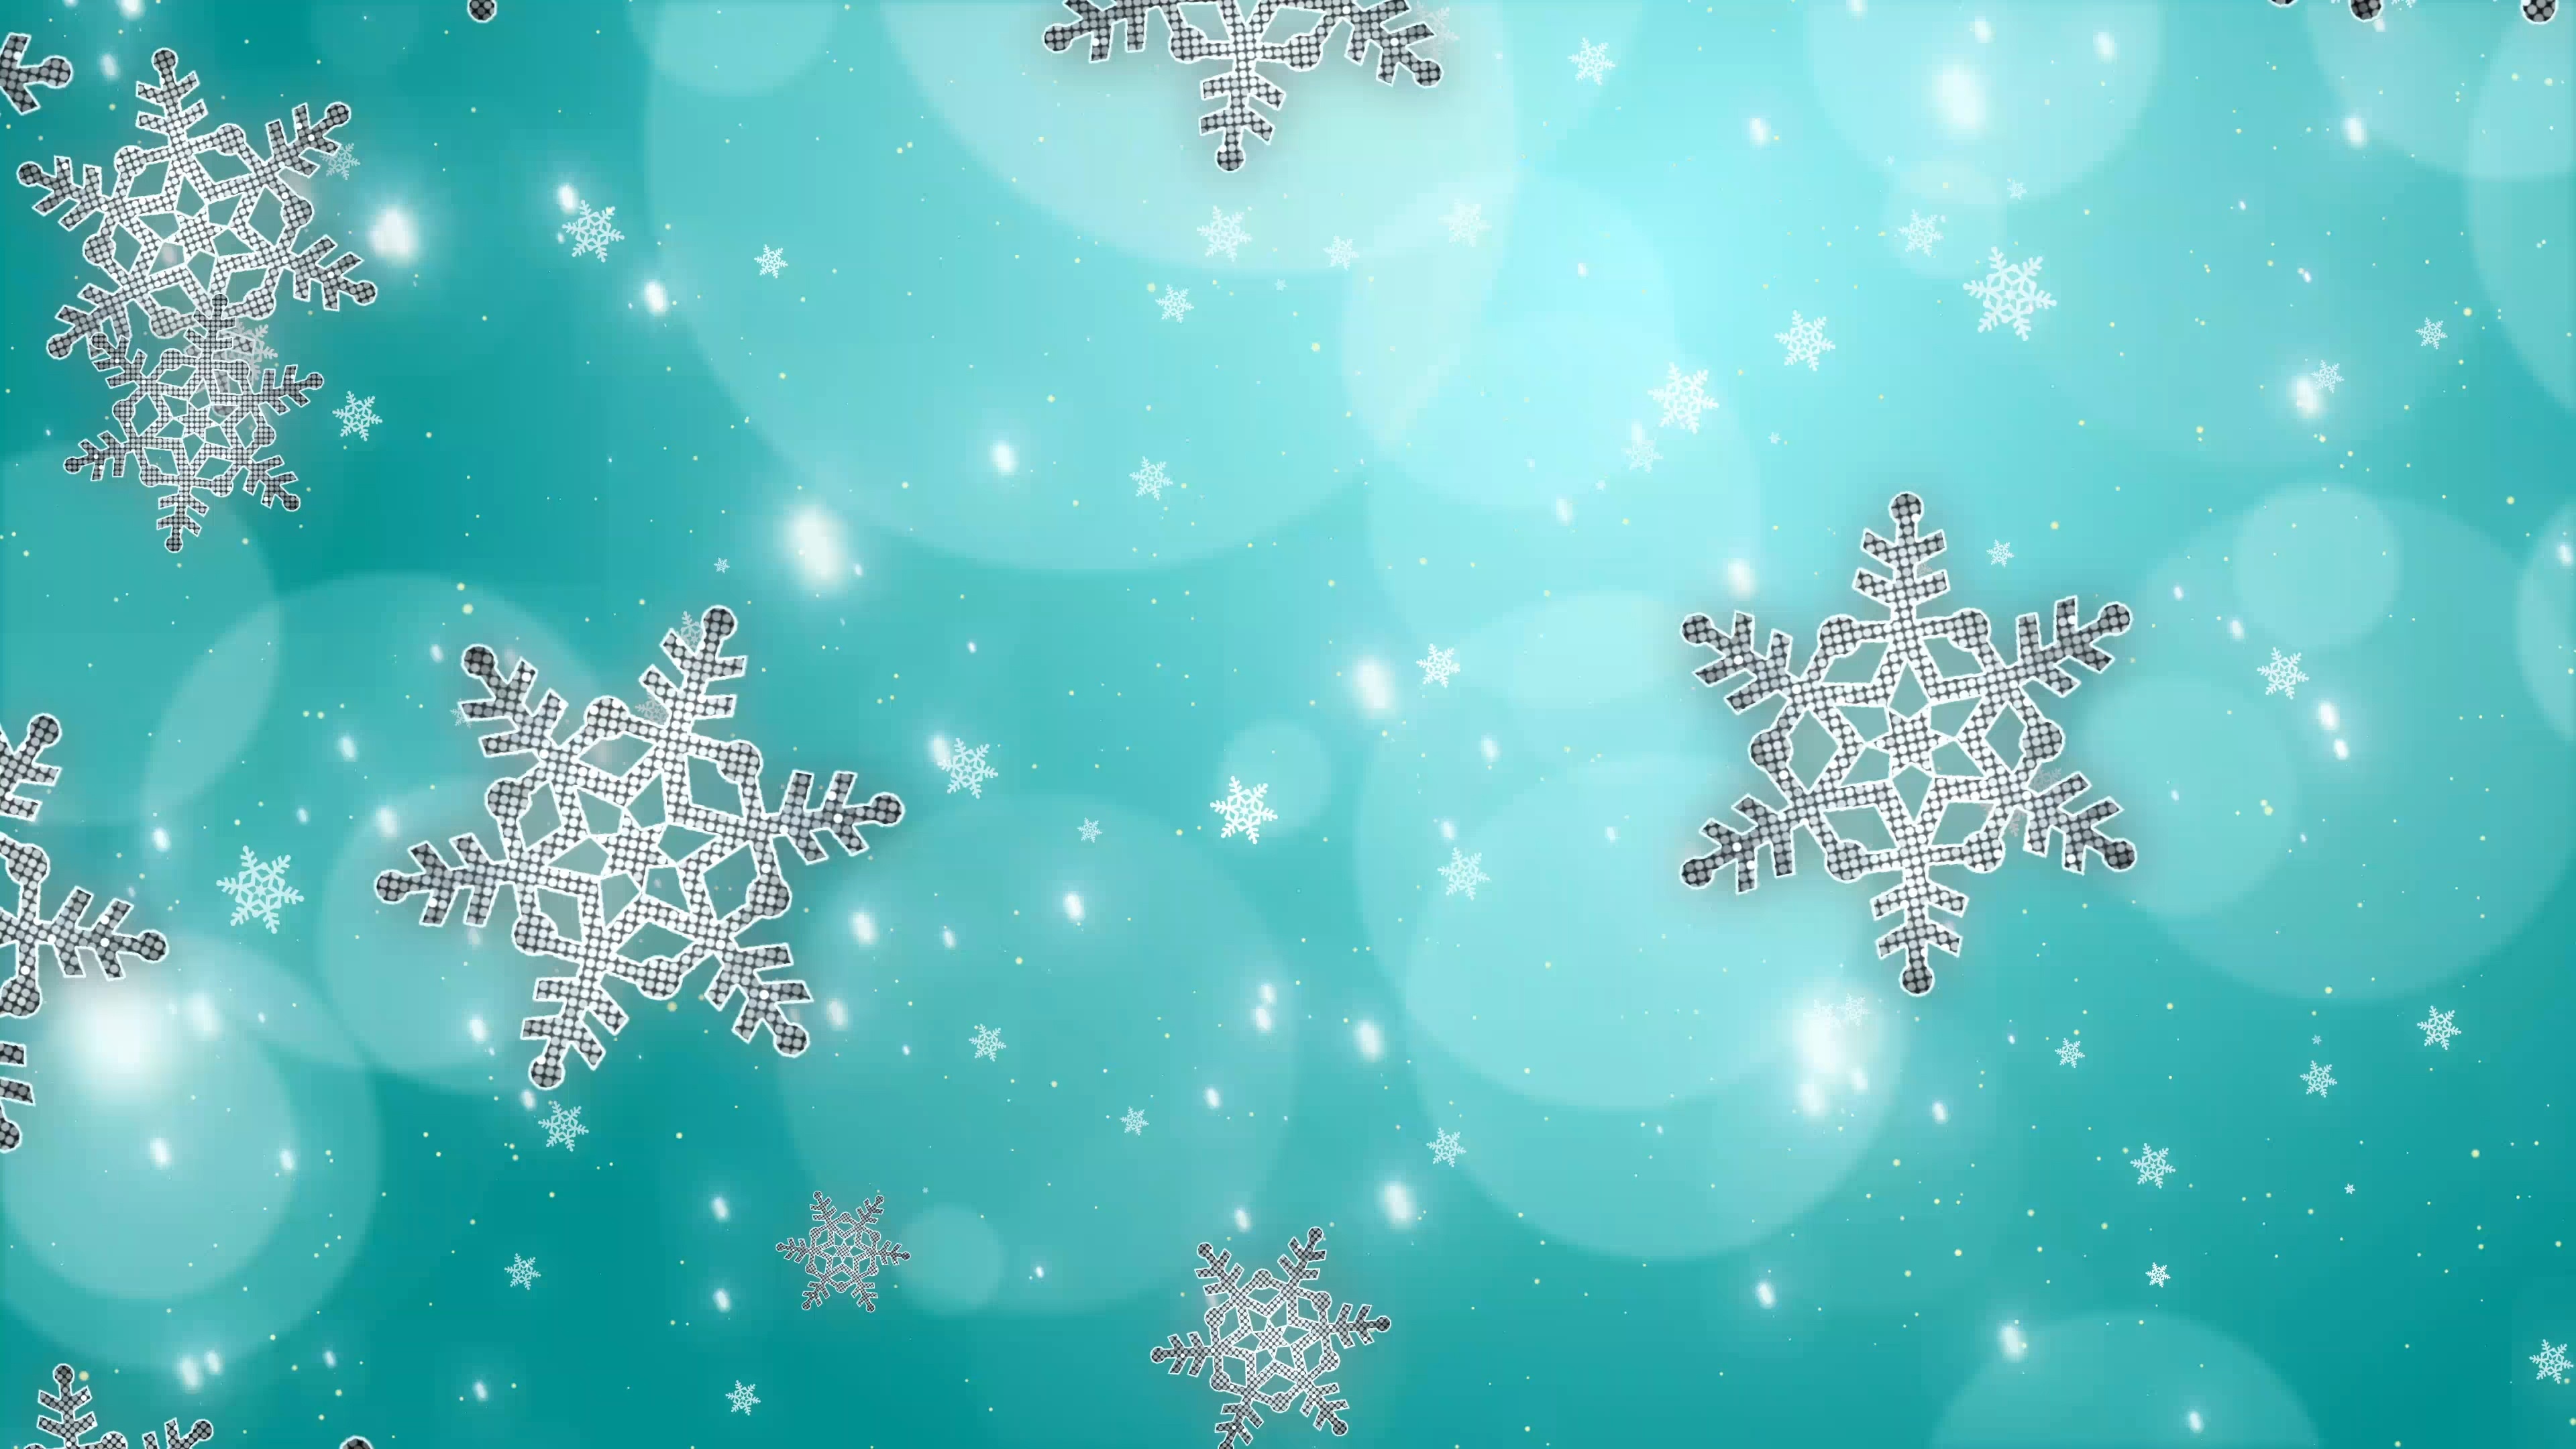 Картинки фон снежинки. Фон снежинки. Новогодний фон снежинки. Голубой фон со снежинками. Зима снежинки.